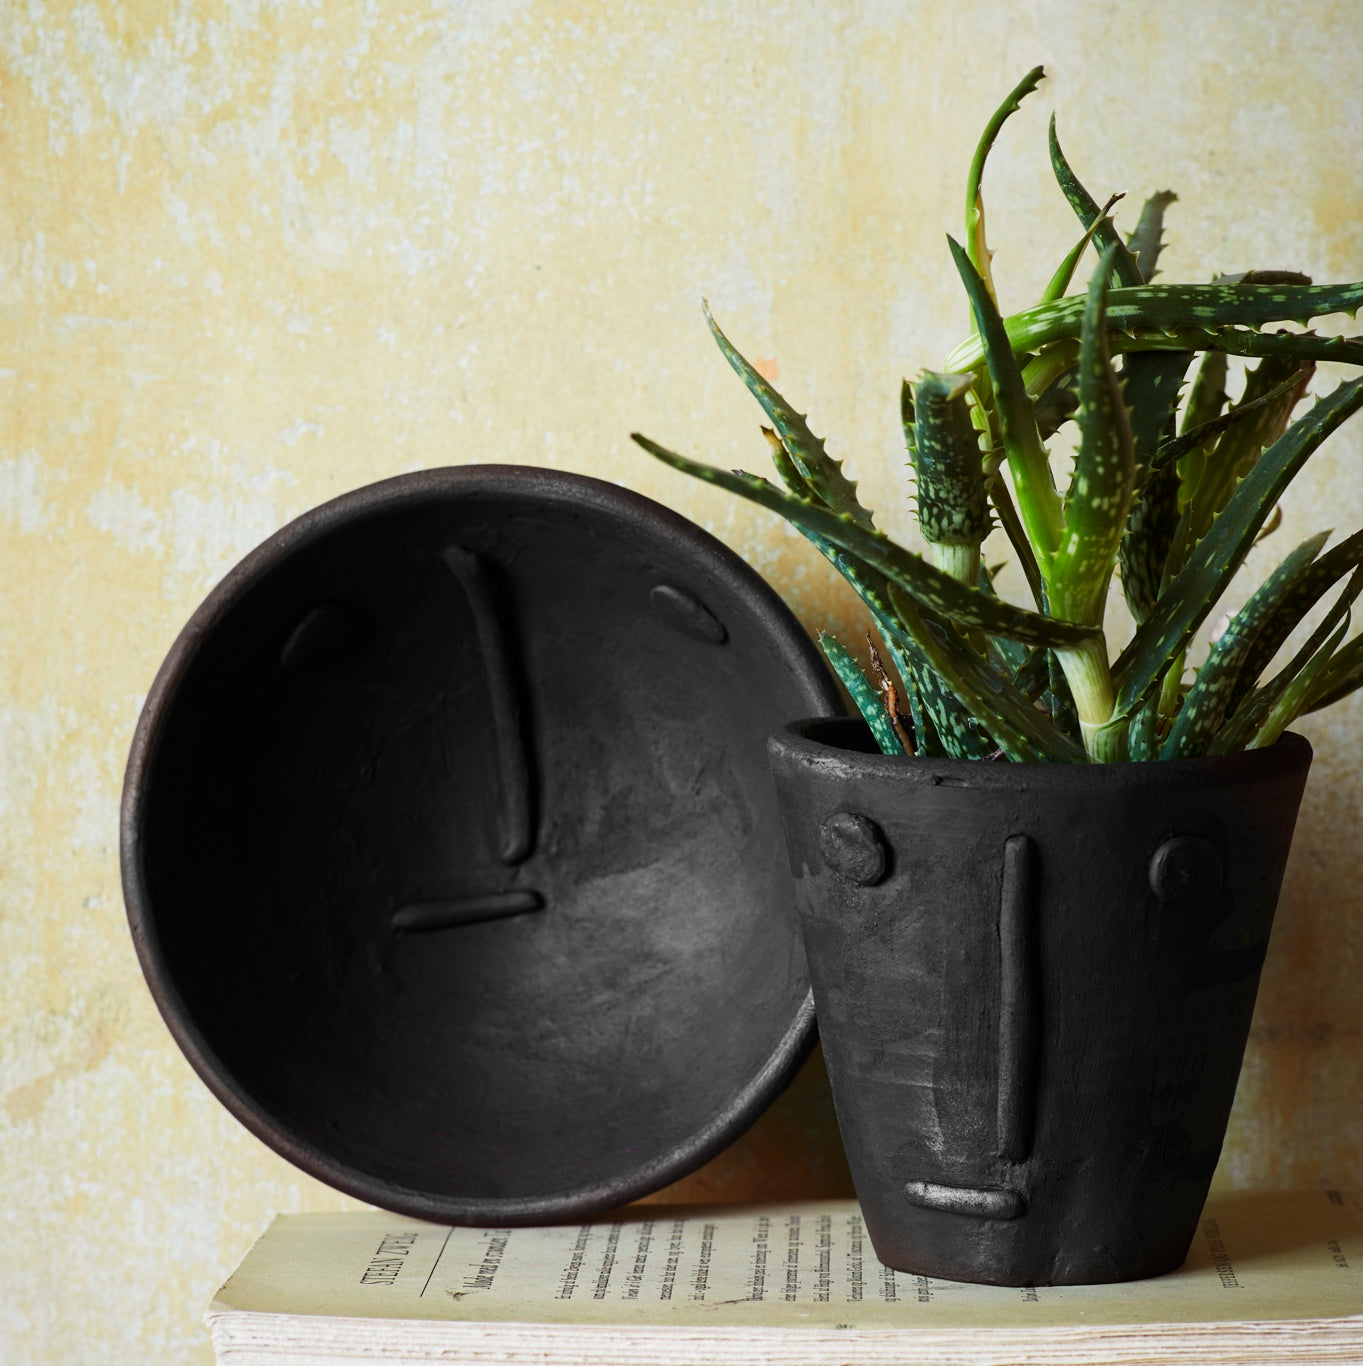 Black Plant Pot With Face Design